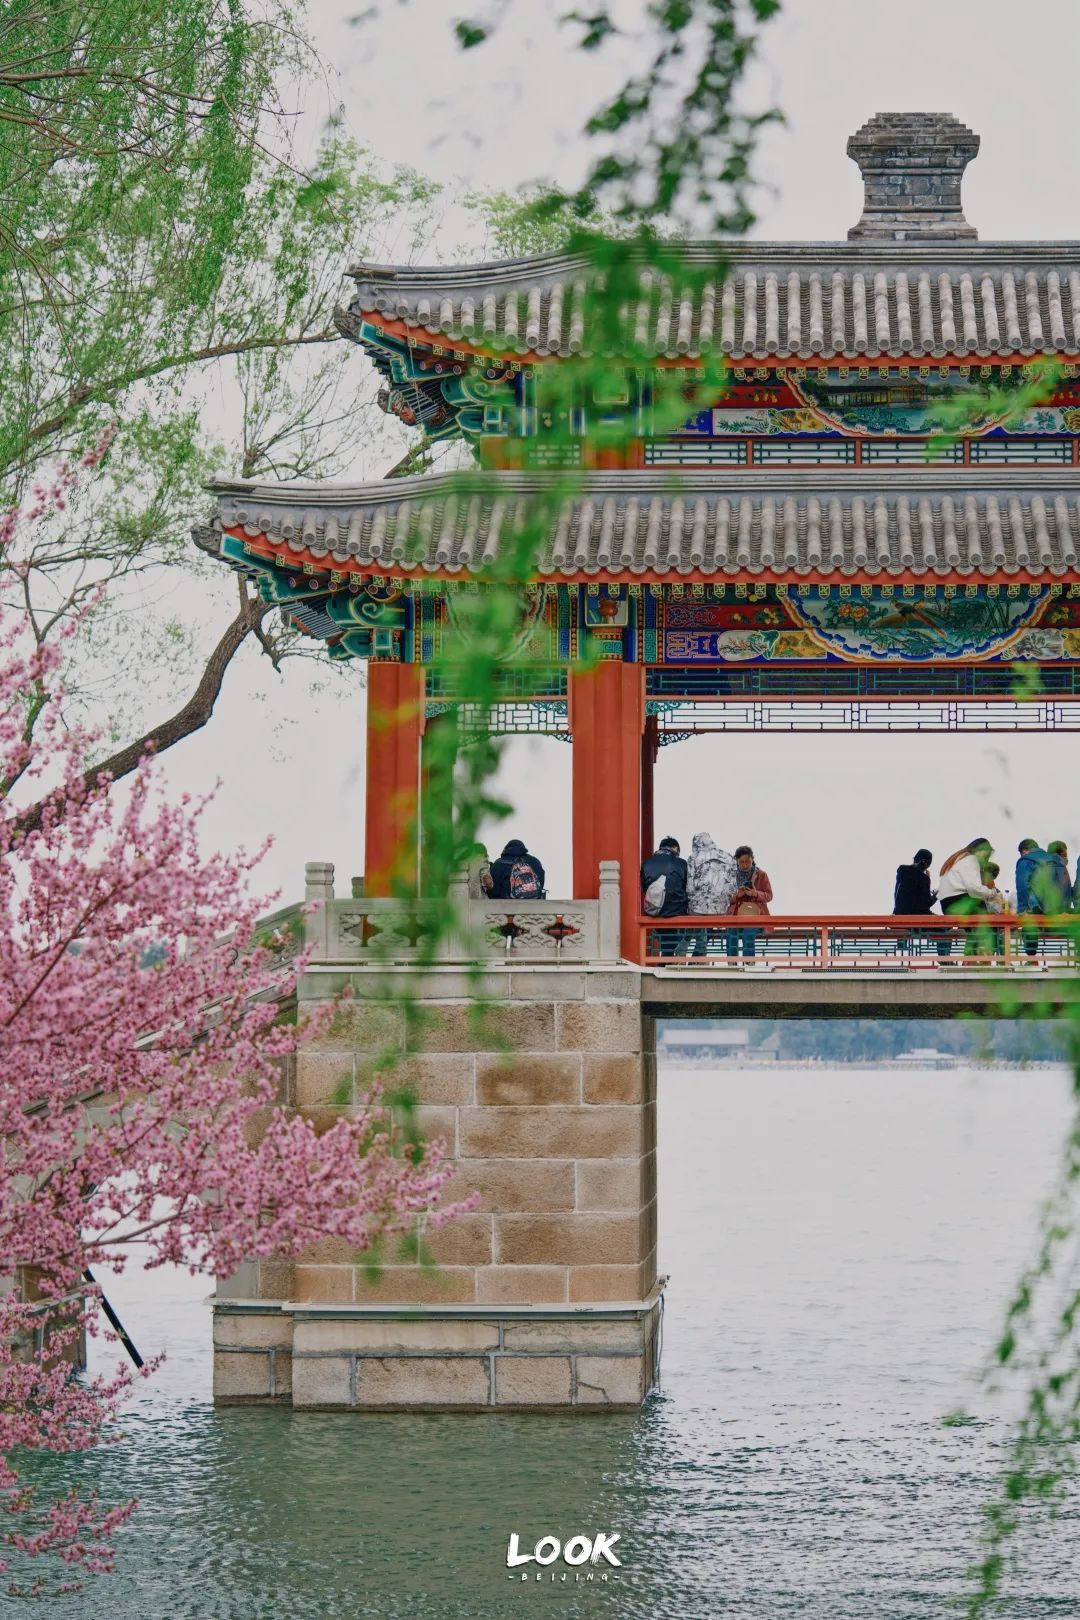 北京看花的公园图片